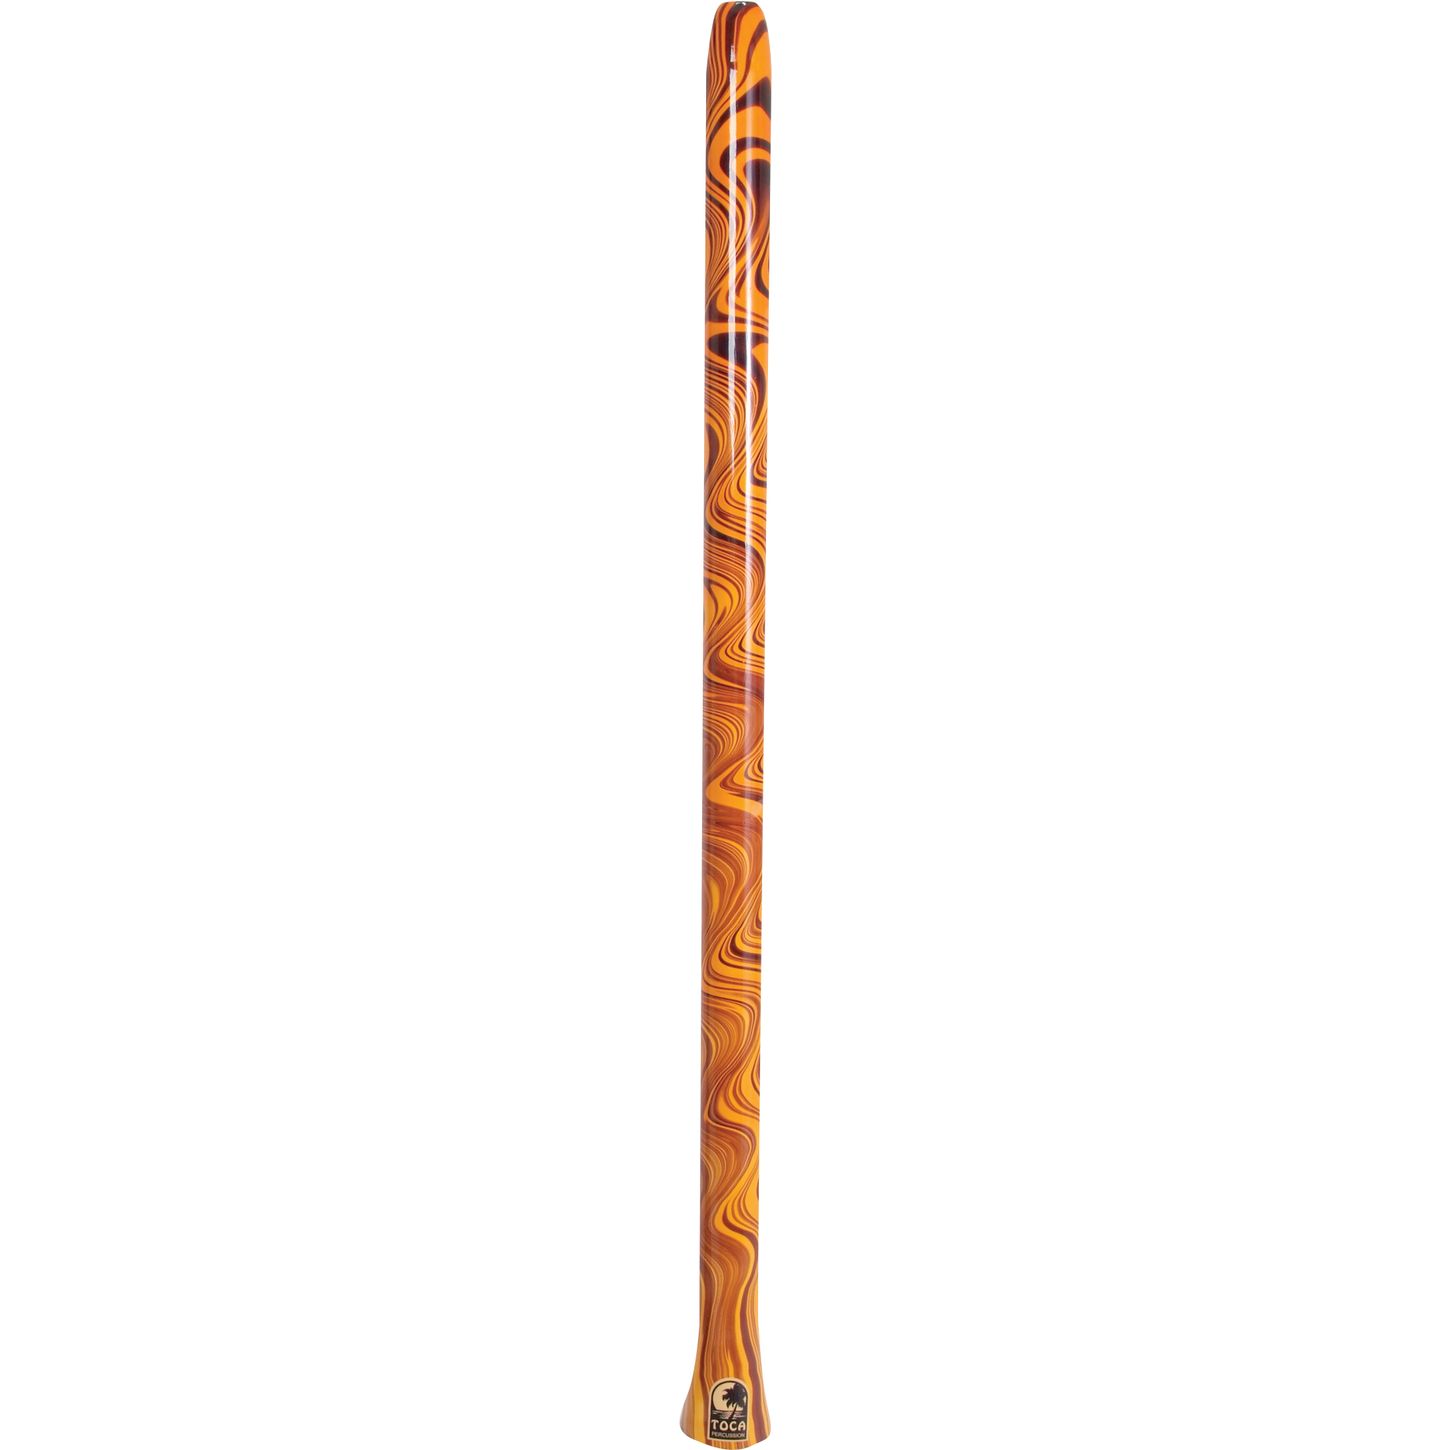 didgeridoo instrument